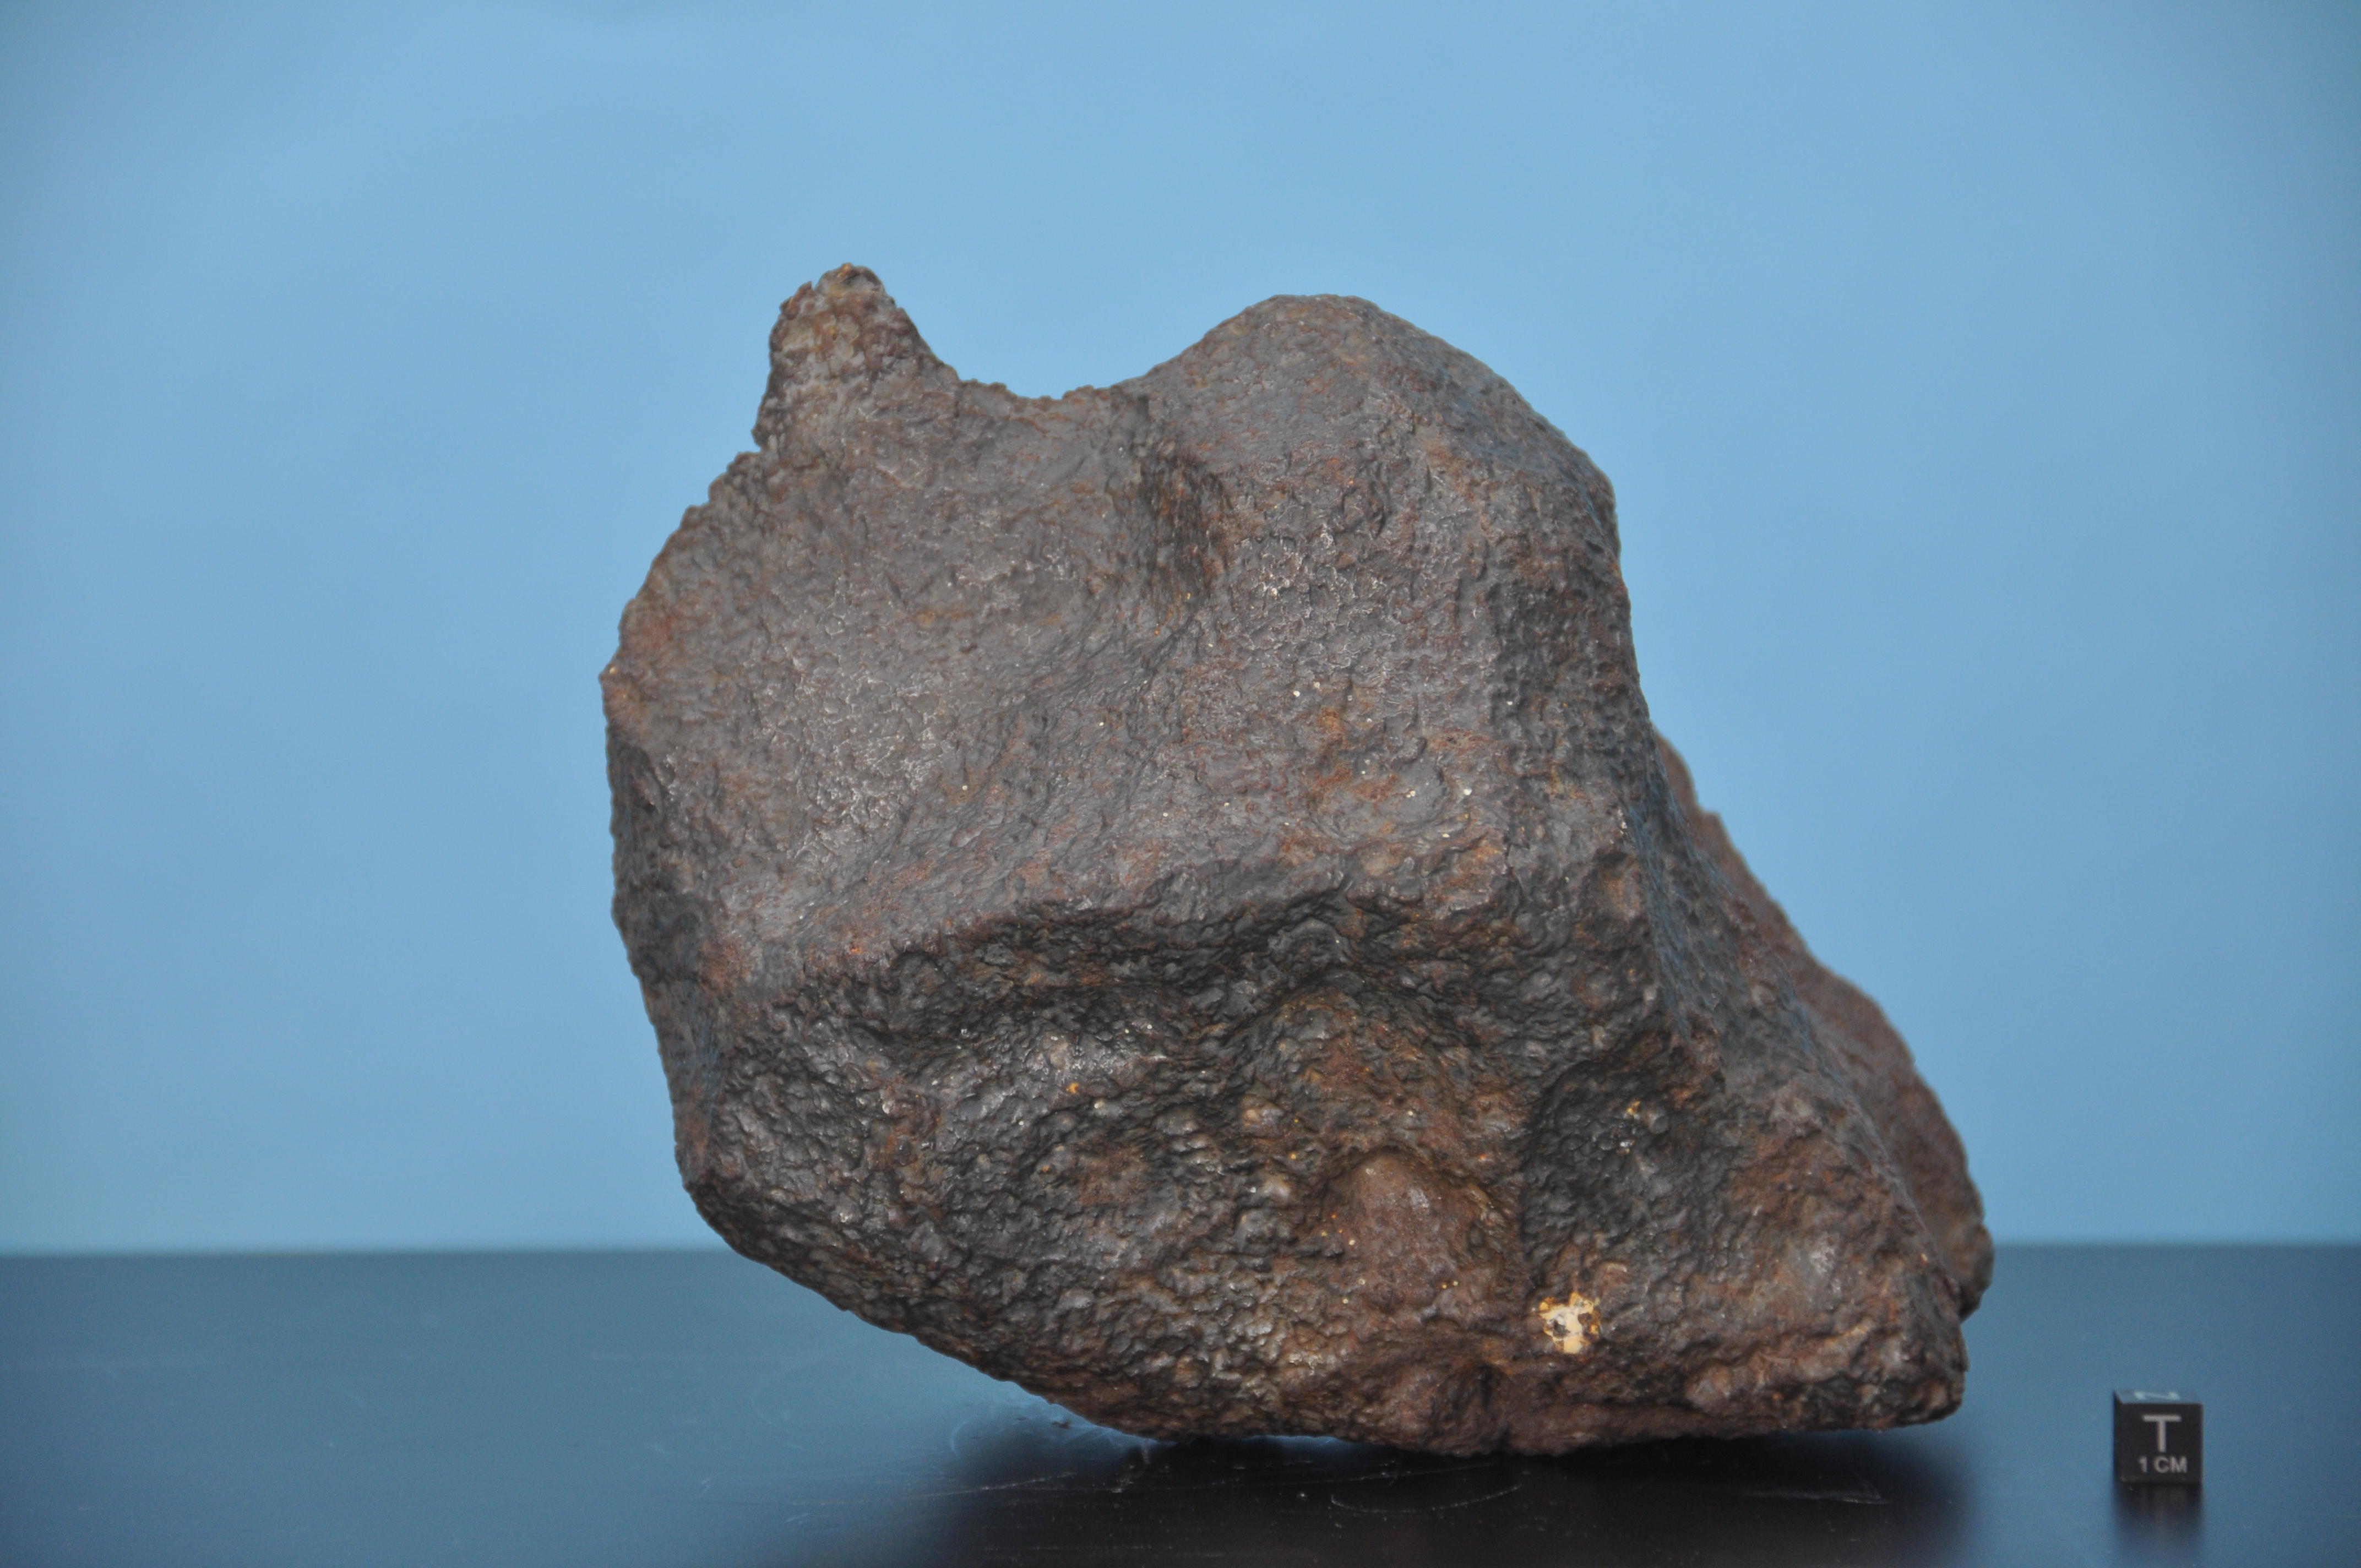 岐阜市で2個目の鉄隕石見つかる 長良隕石と同時落下したものか 岐阜聖徳学園大学 川上紳一教授が鑑定 大学プレスセンター